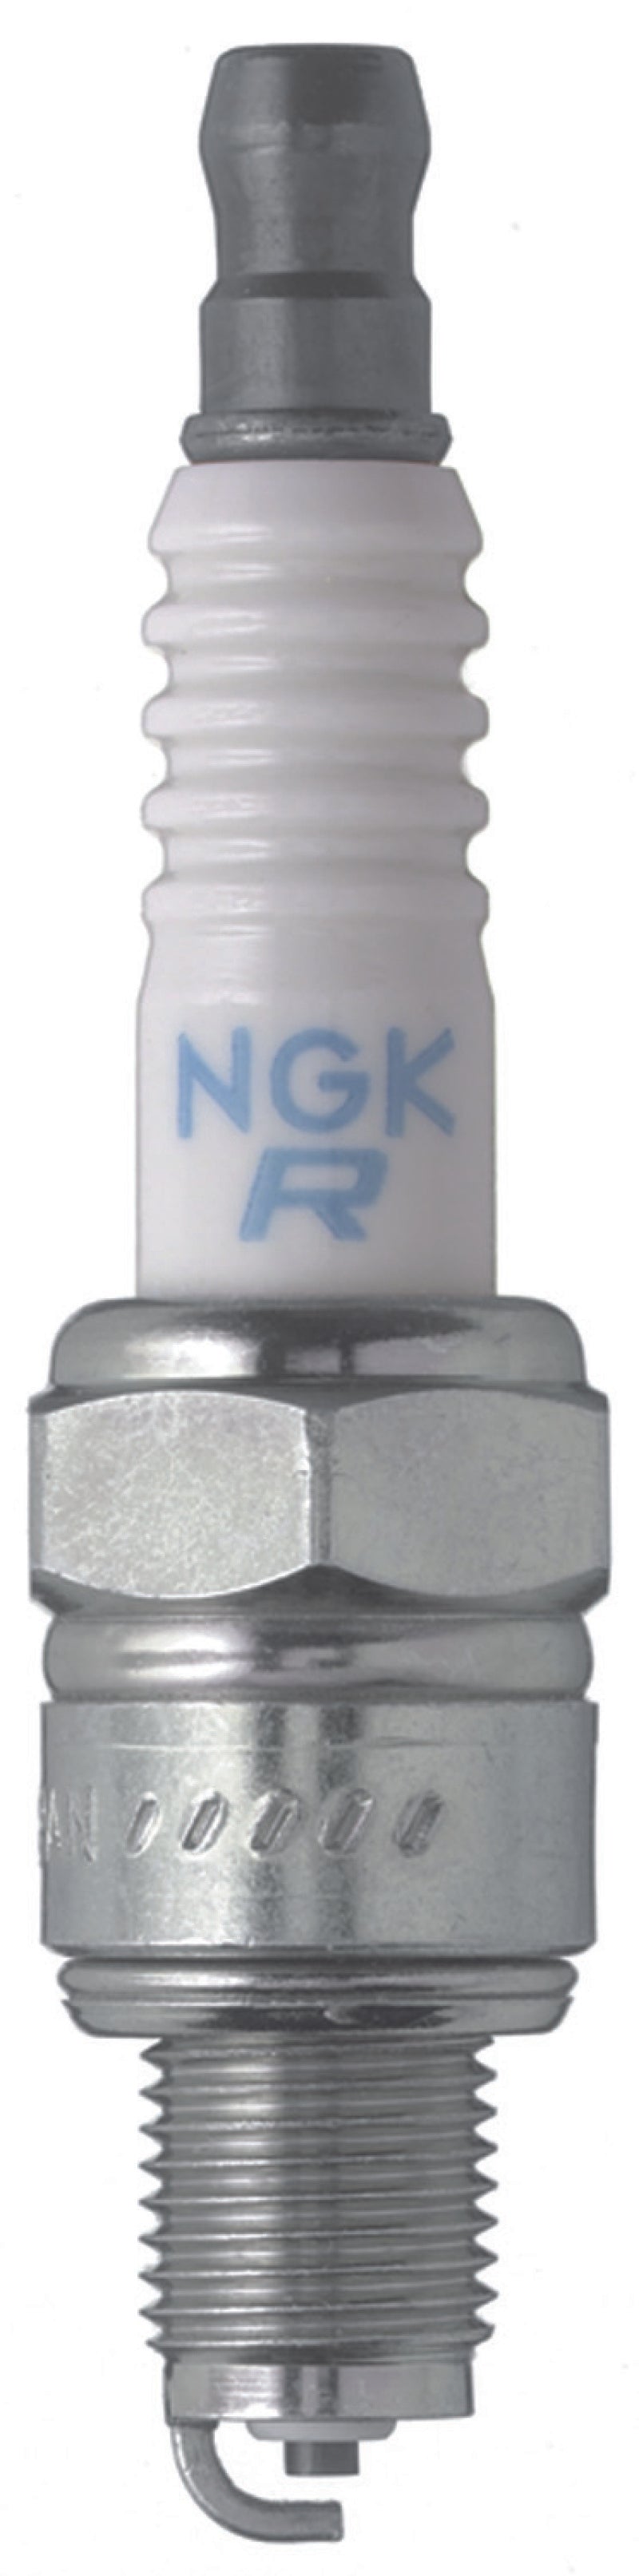 NGK Standard Spark Plug Box of 4 (CR5HSB)